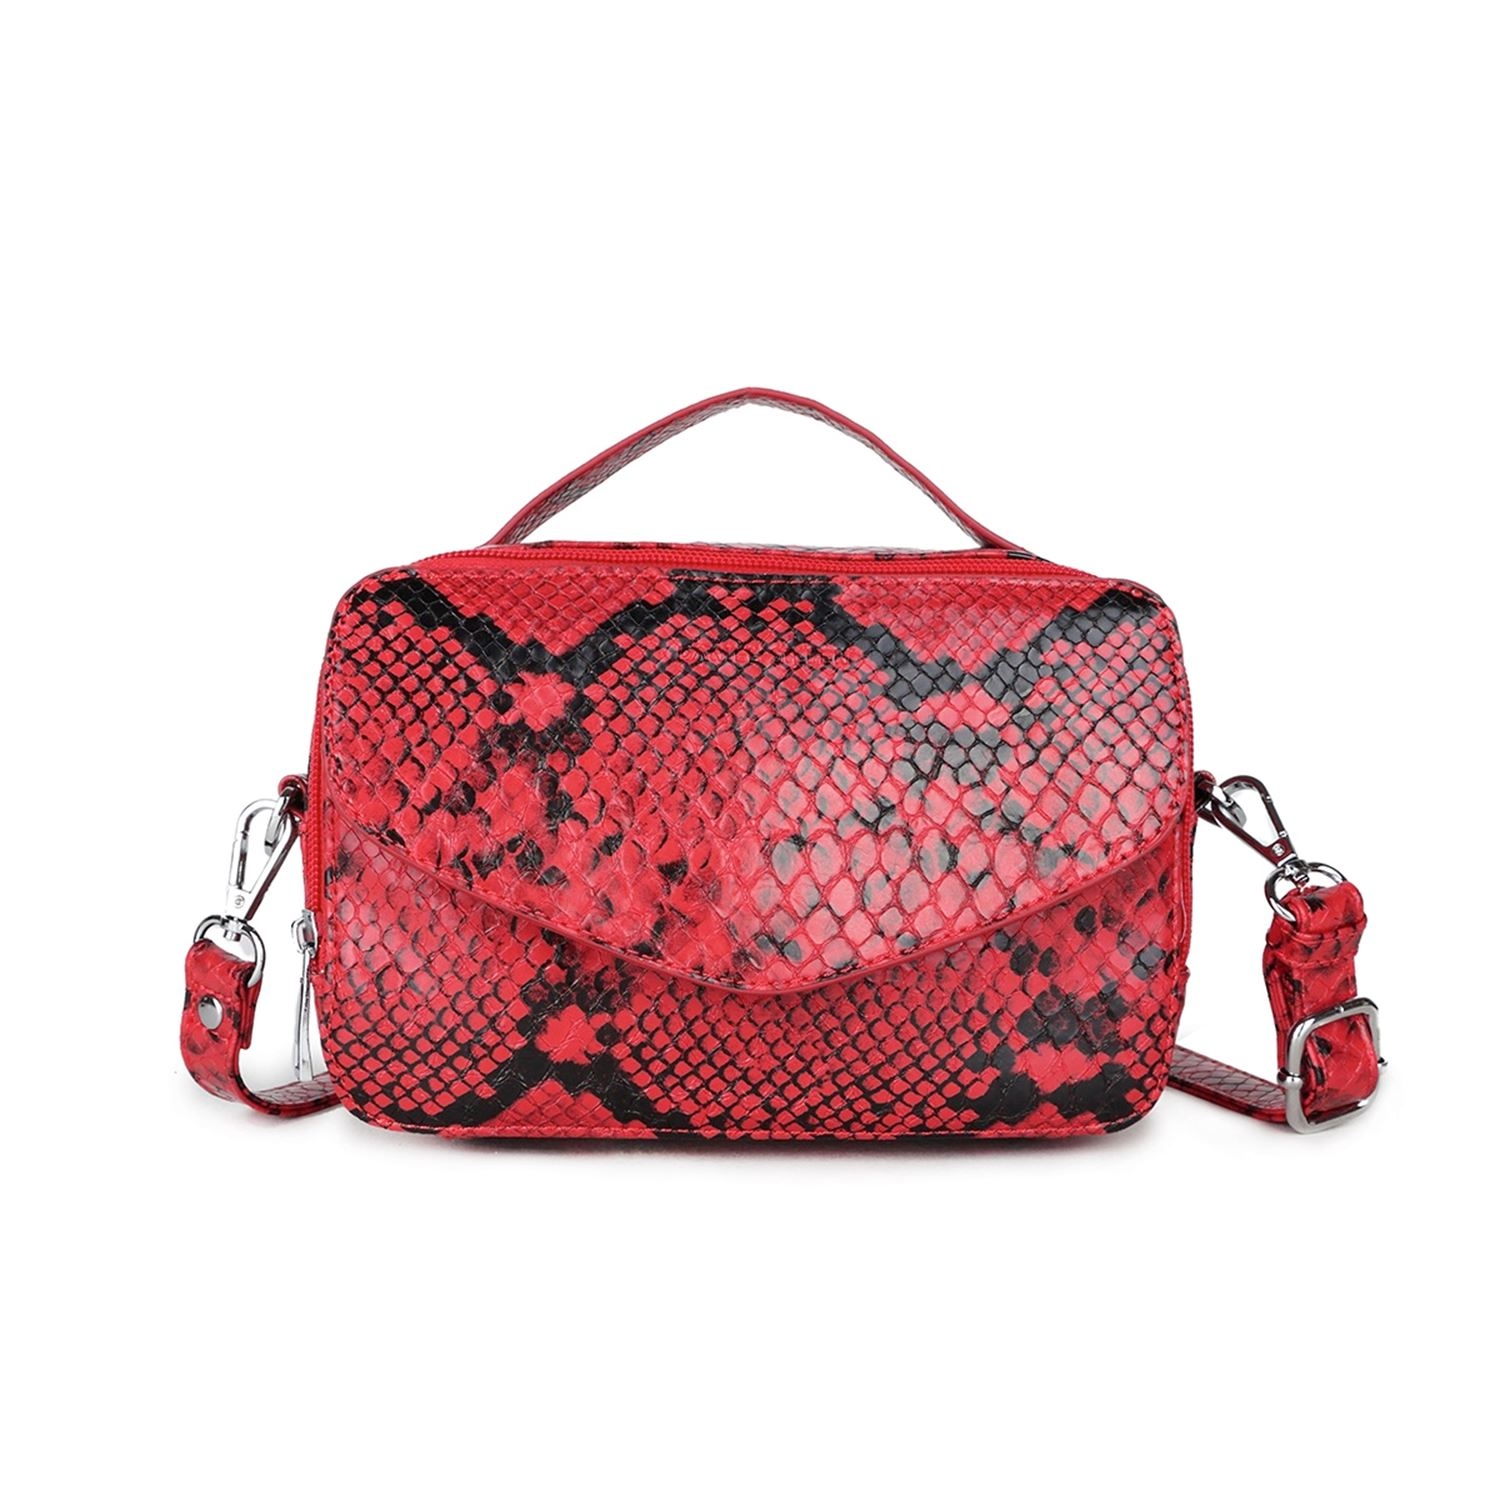 geni nægte Derive Daniel Silfen – Emma håndtaske - Red snake. Tasken der er perfekt til både  hverdag og fest!